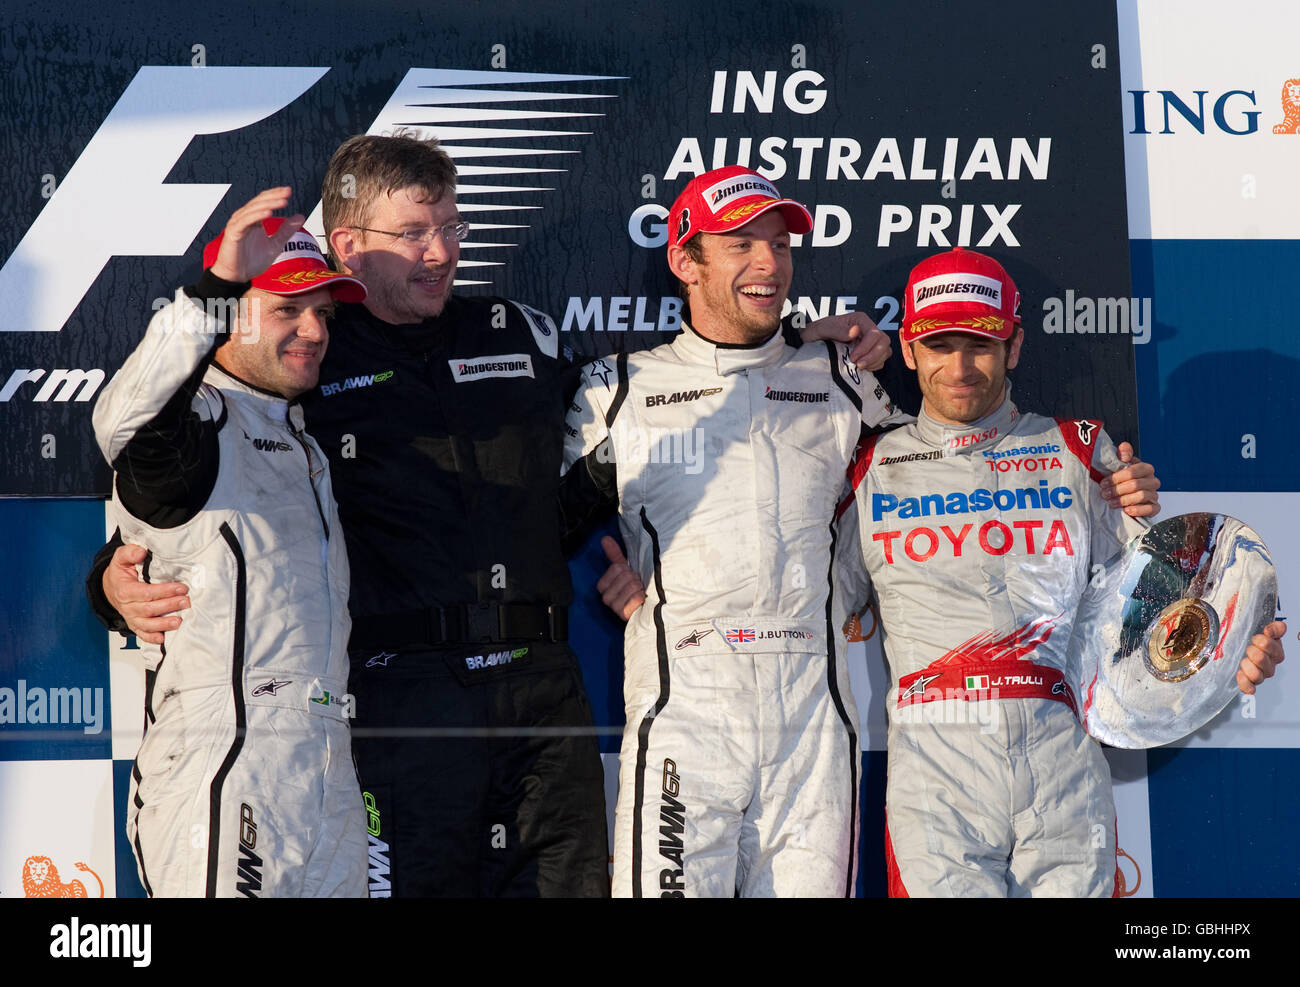 Jenson Button della Brawn GP festeggia la vittoria del Gran Premio d'Australia con Ross Brawn, Rubens Barrichello della Brawn GP che ha concluso secondo e Jarno Trulli della Toyota che ha concluso terzo durante il Gran Premio d'Australia ad Albert Park, Melbourne, Australia. Foto Stock